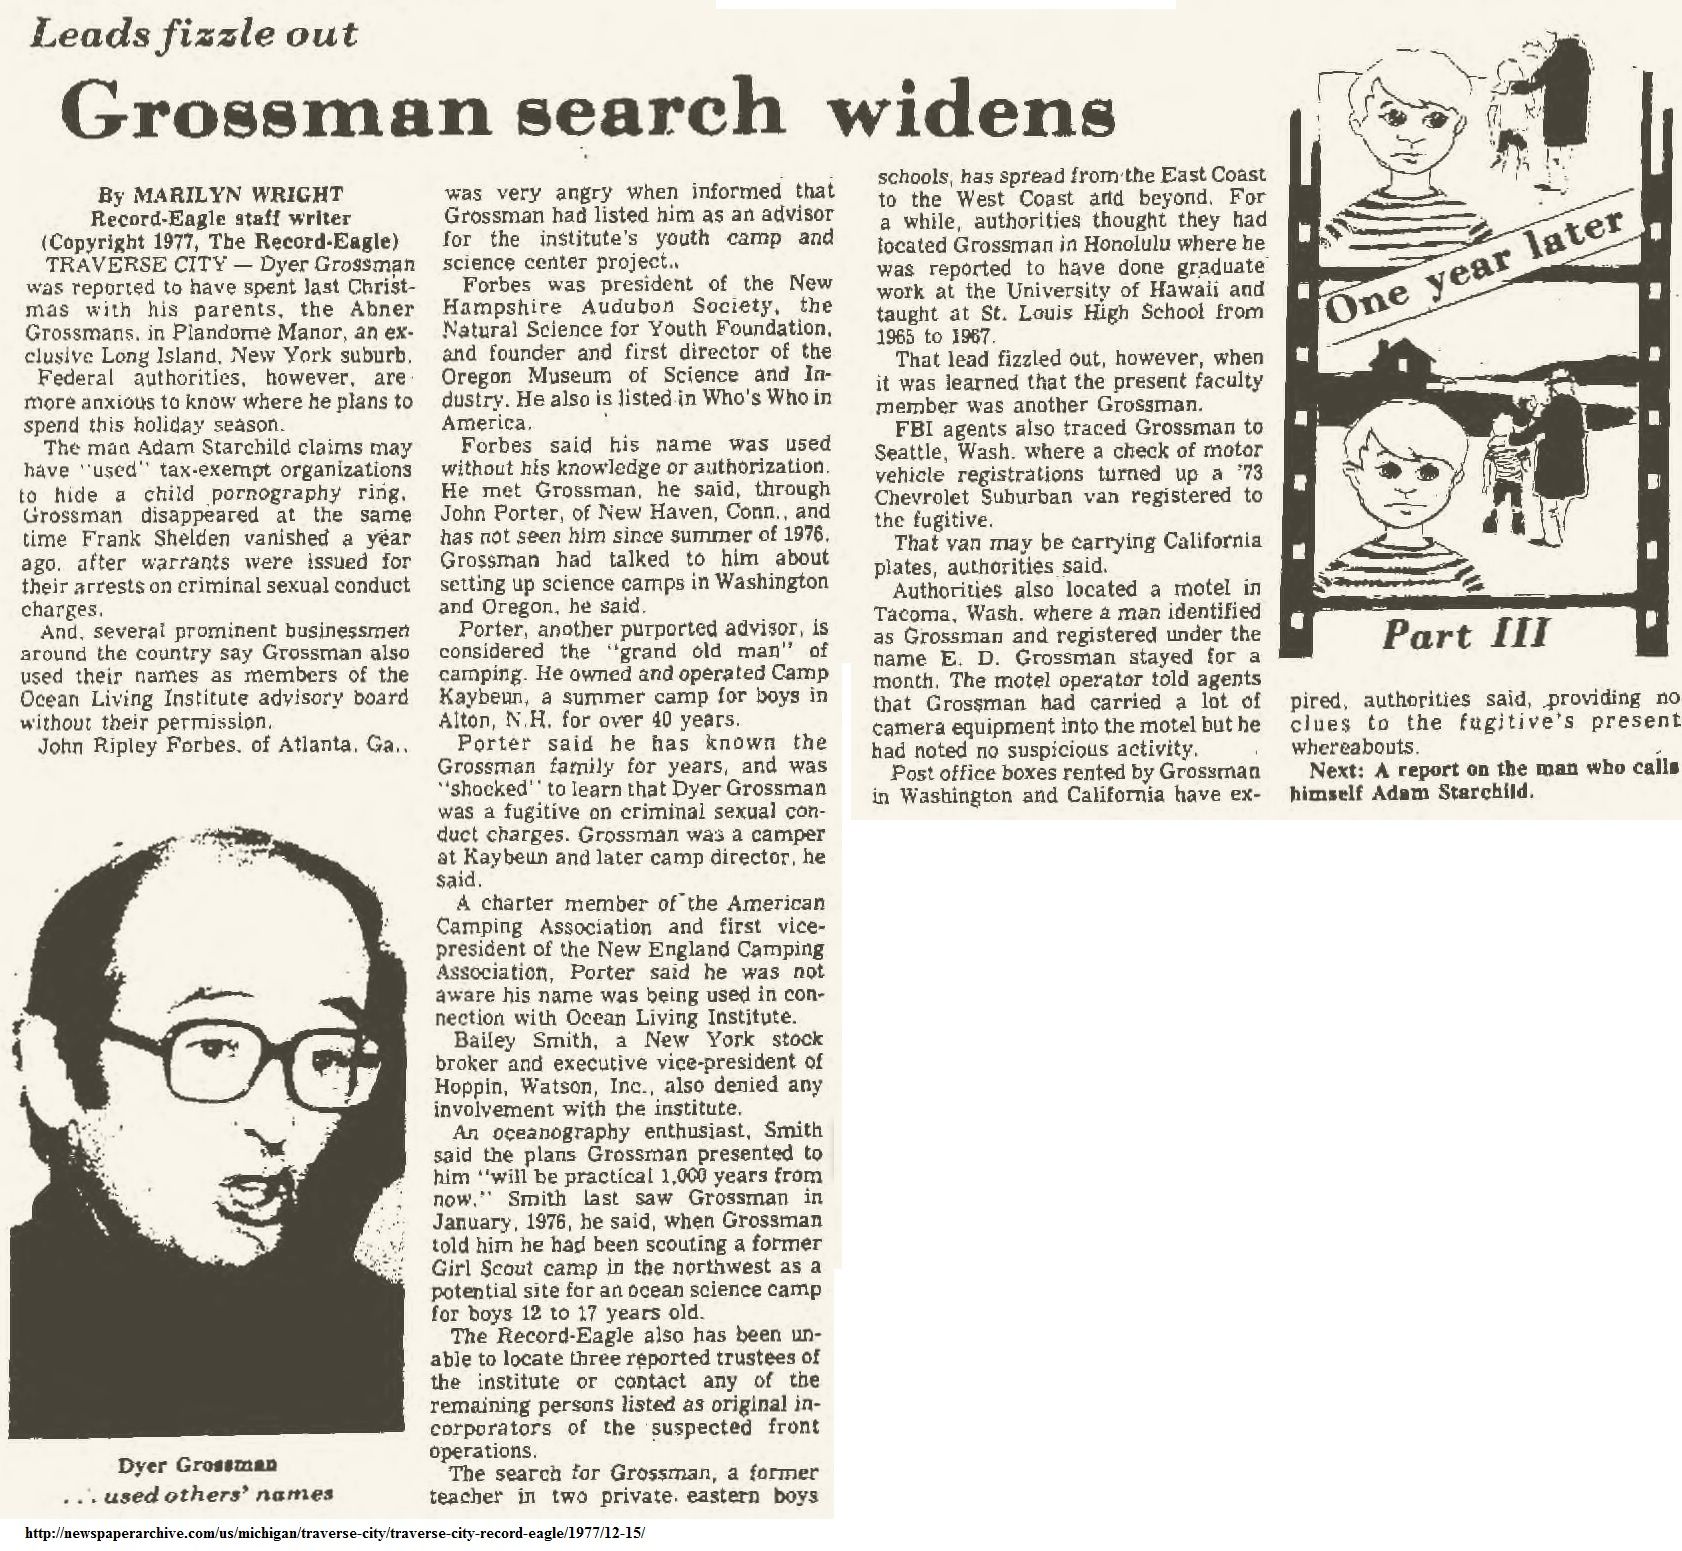 DTTS Grossman